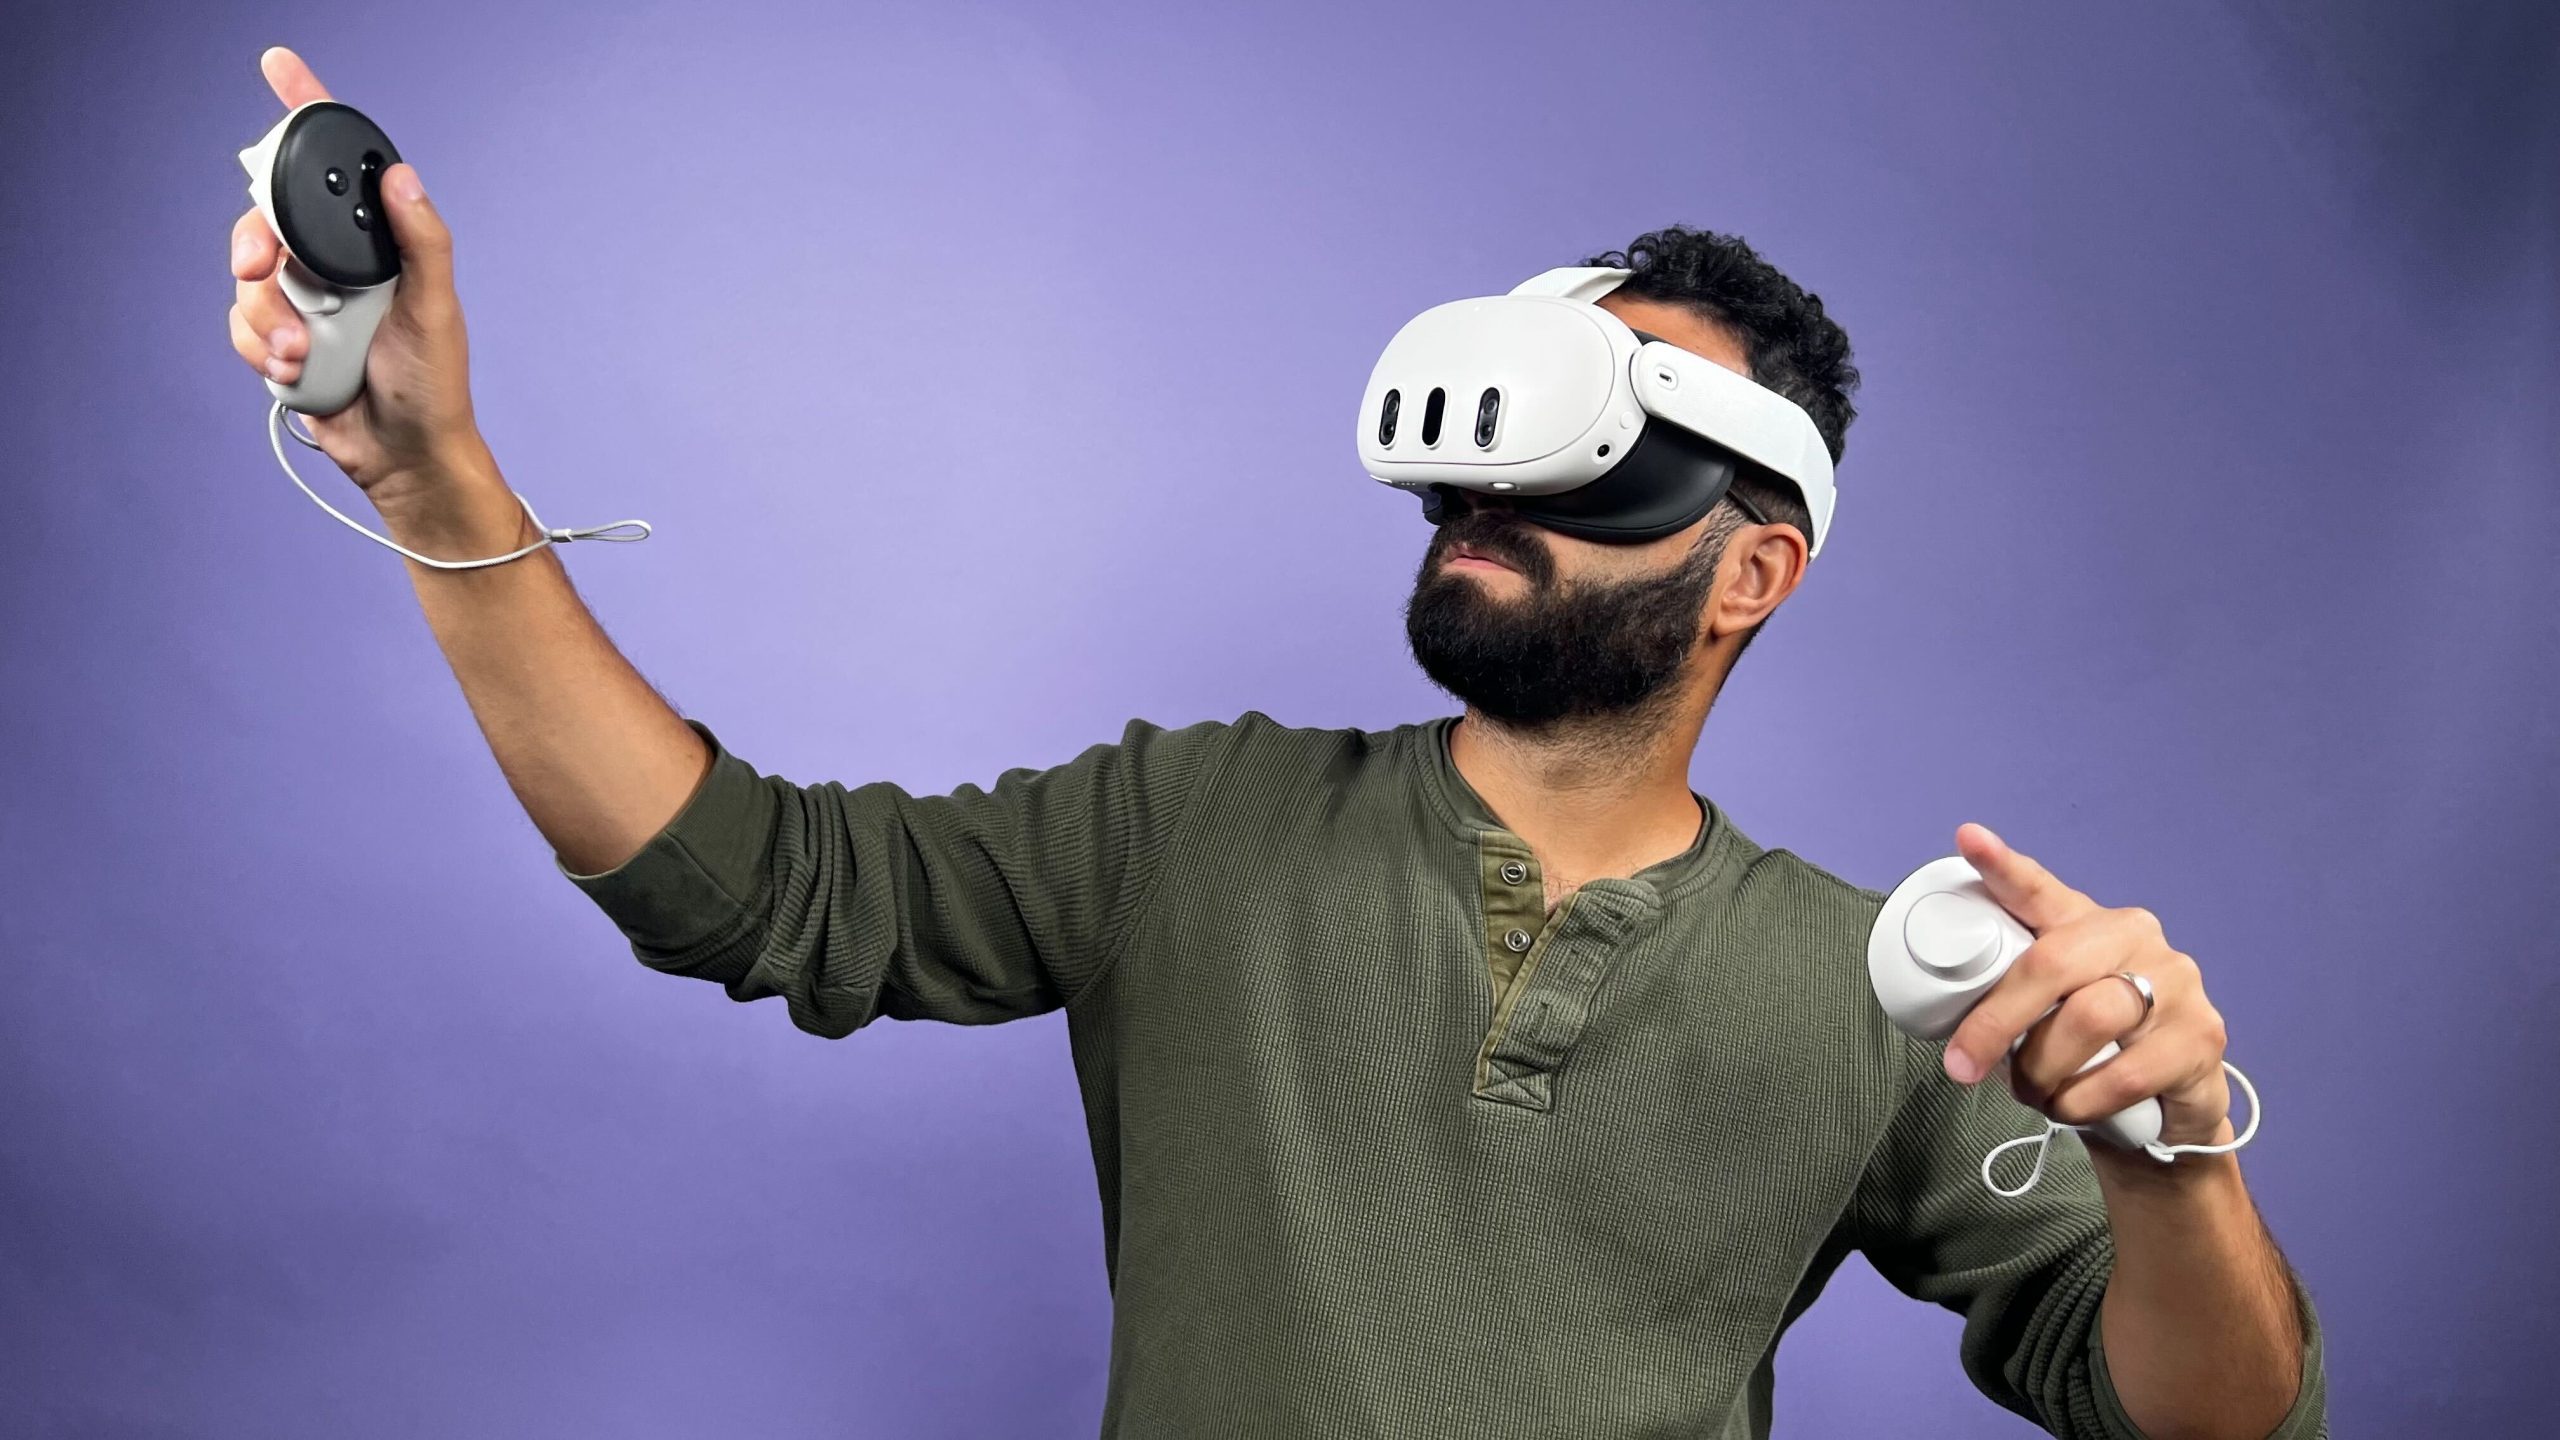 Meta a investi 4,3 milliards dans la VR pour un retour de 440 millions.